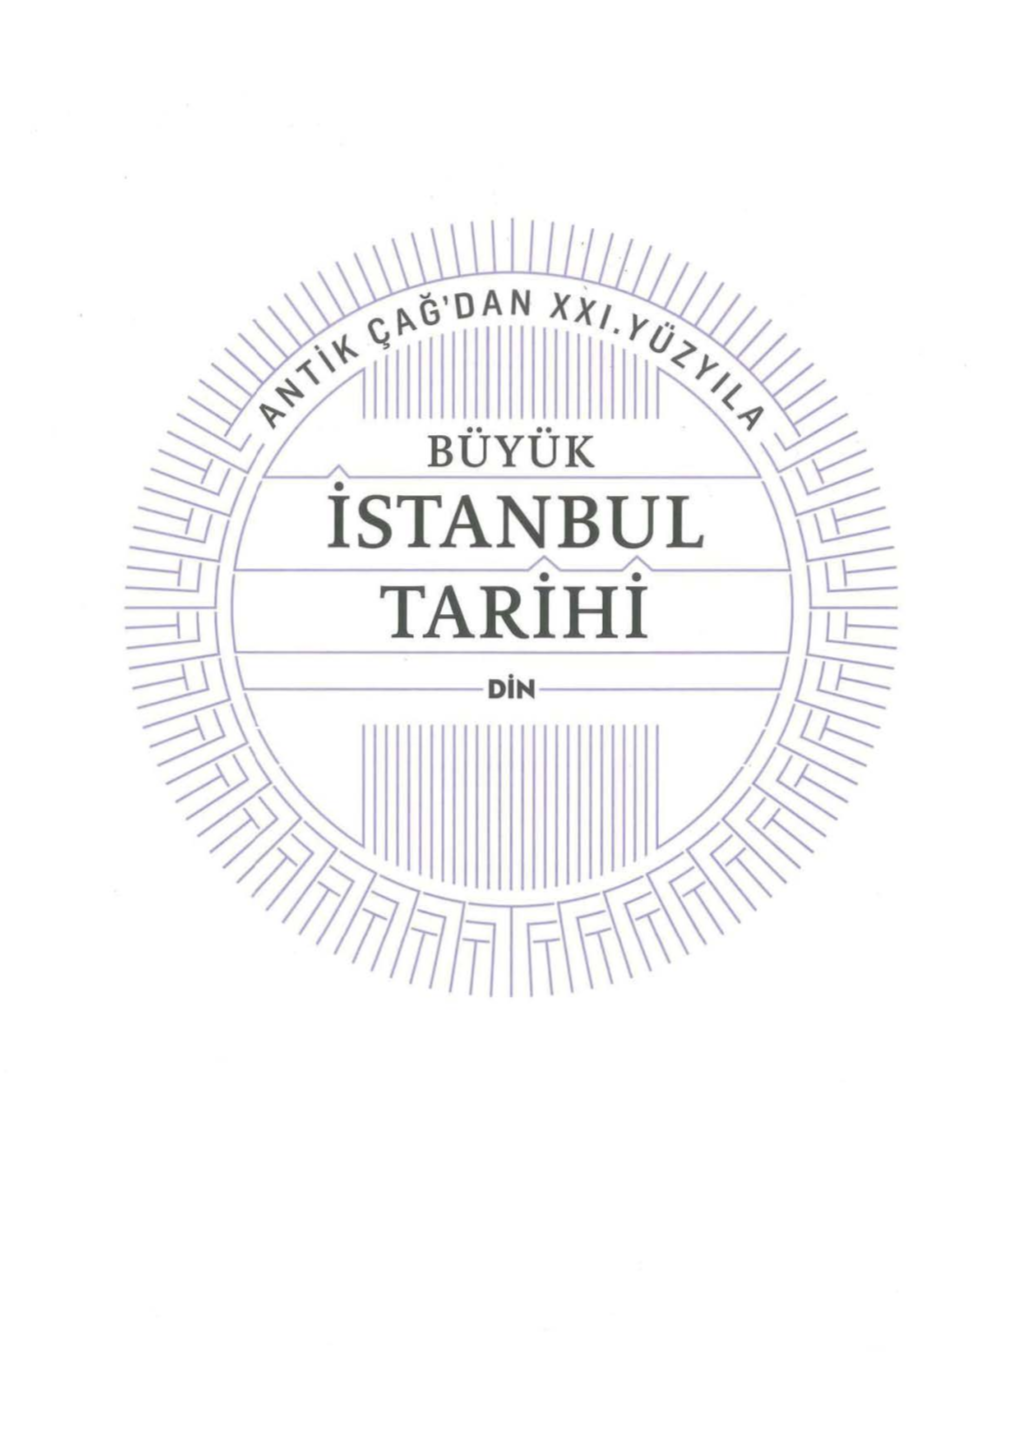 ~~ TARIHI )~ ~ DIN Lft§ ~ ~ BÜYÜK BÖLUM Witoilleri Bili M VE DA NI ŞMA KURULU GORSEL EDITÖR Tasarlm Dunya Ölçeaı Nde Istanbul A